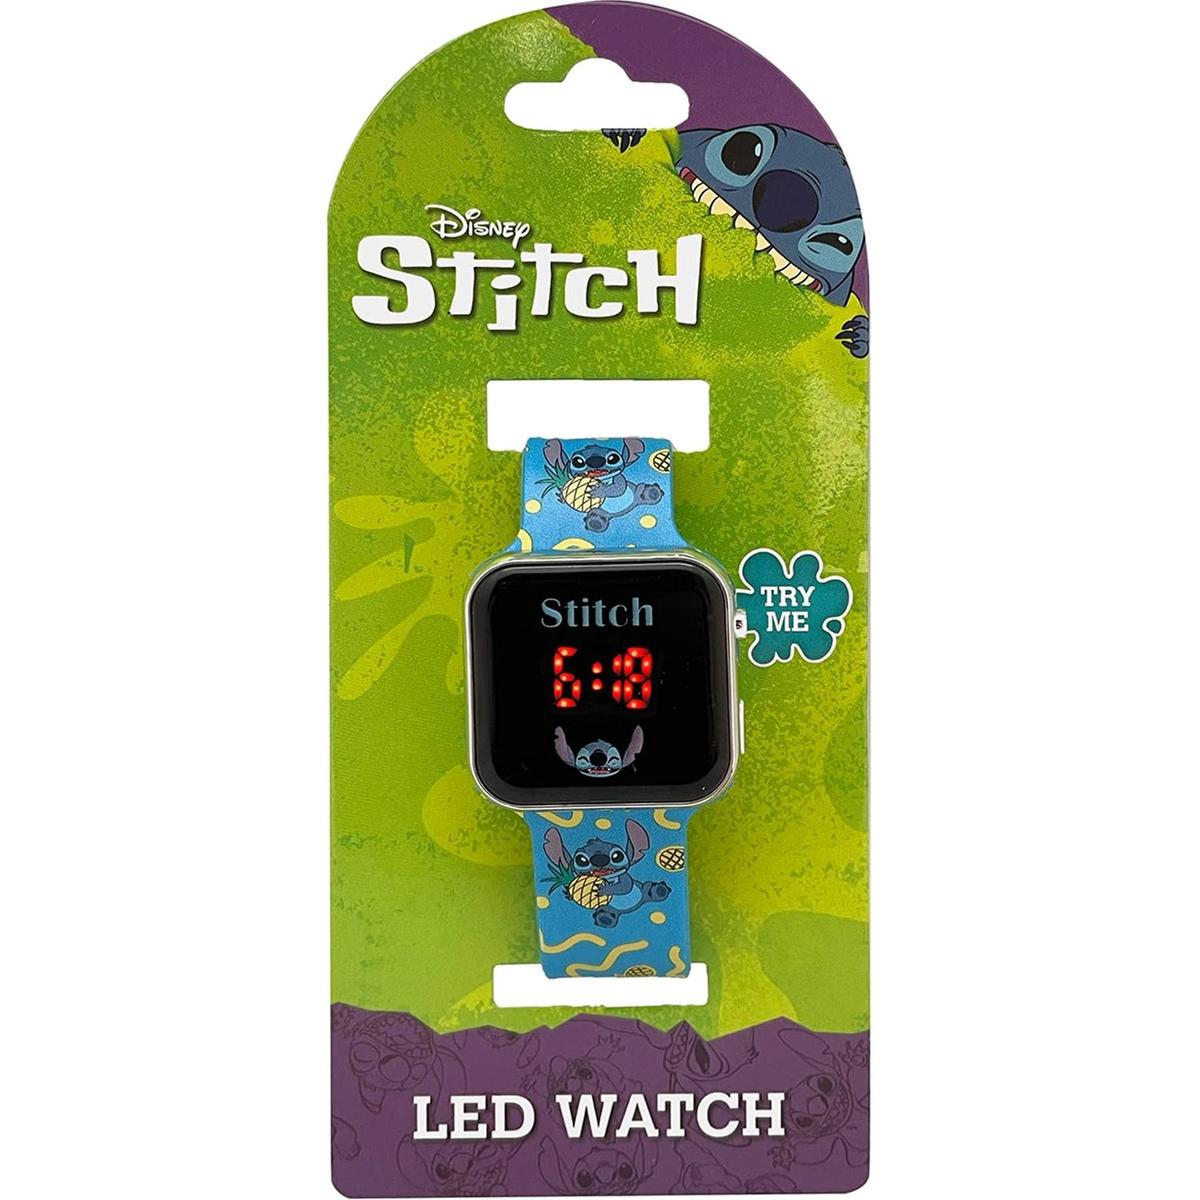 Stitch Disney - Relógio LED